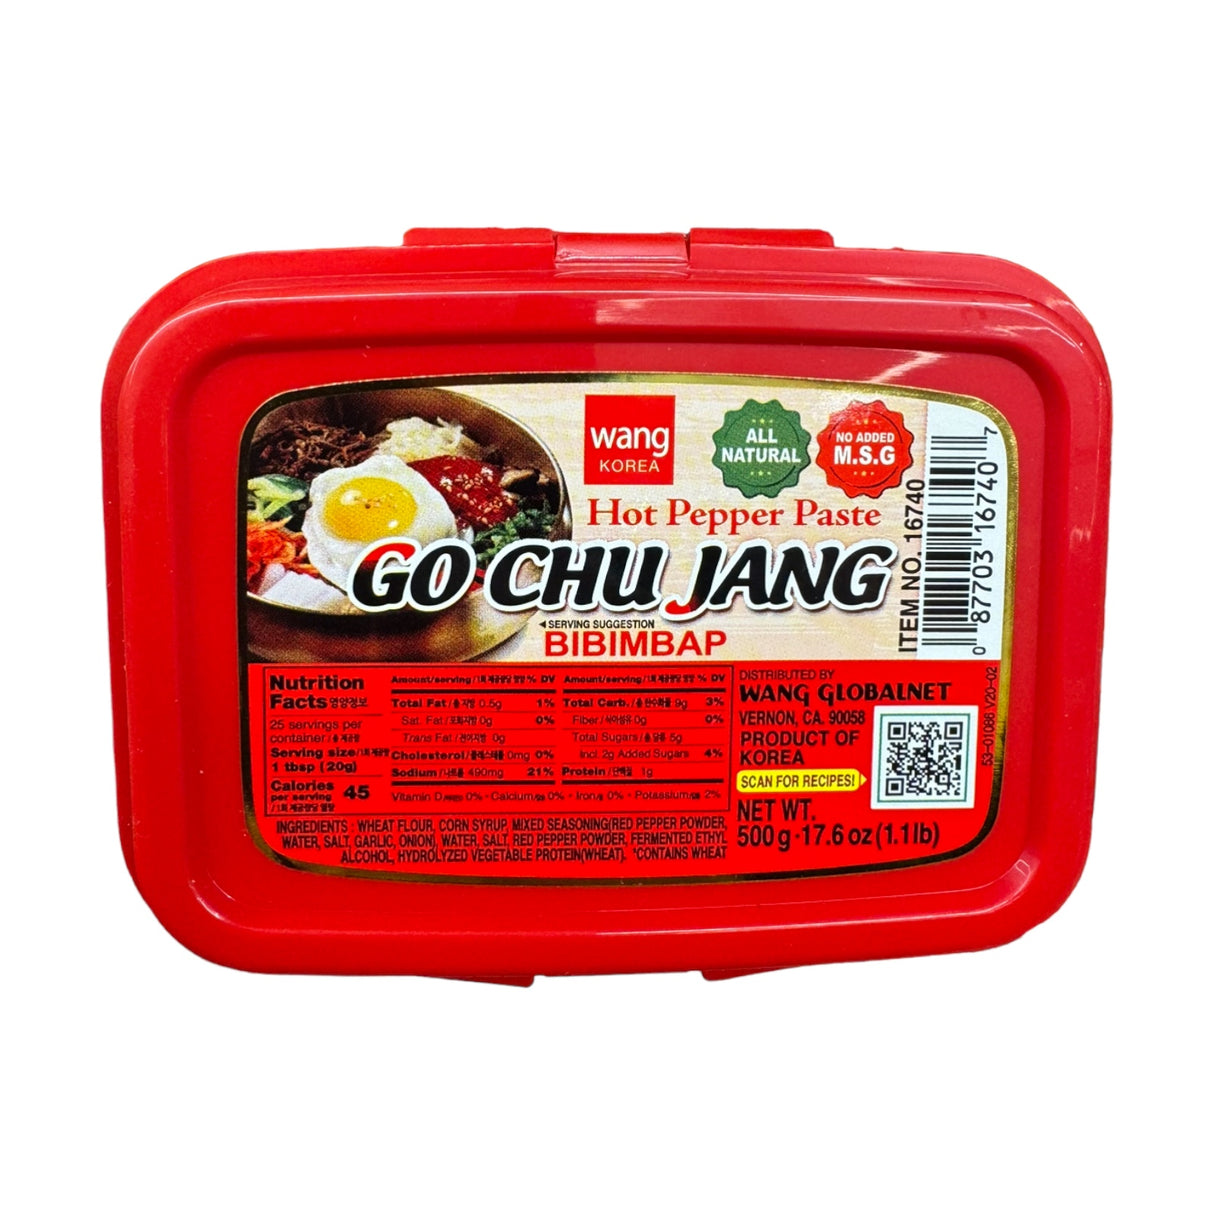 Wang Korea Hot Pepper Paste Go Chu Jang